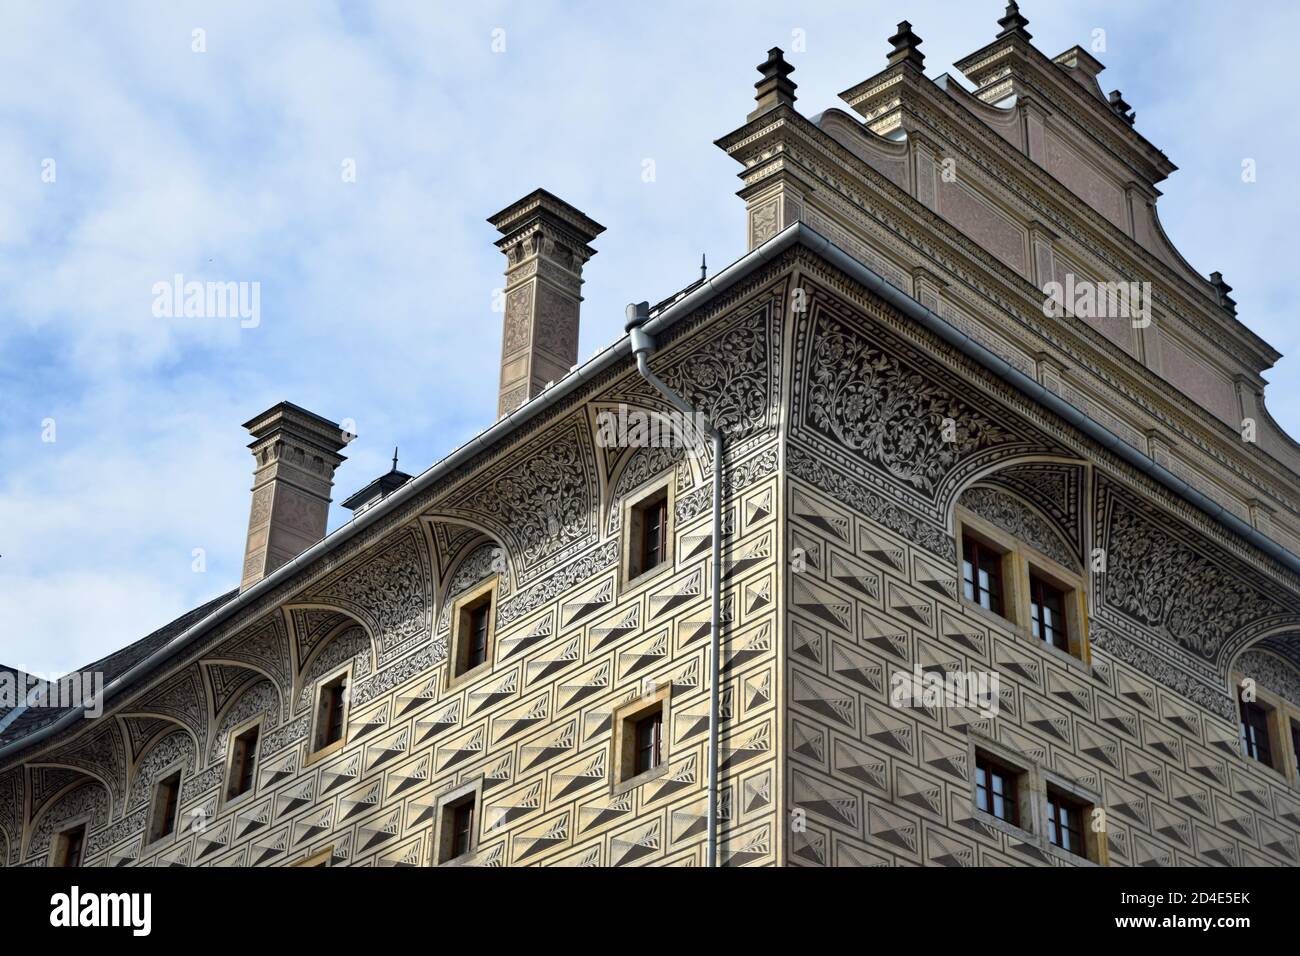 Il Palazzo Schwarzenberg, situato nei pressi del Castello di Praga in Czechia, è un edificio rinascimentale dal 1545 al 1567 costruito dall'italiano Agostino de Galli. Foto Stock